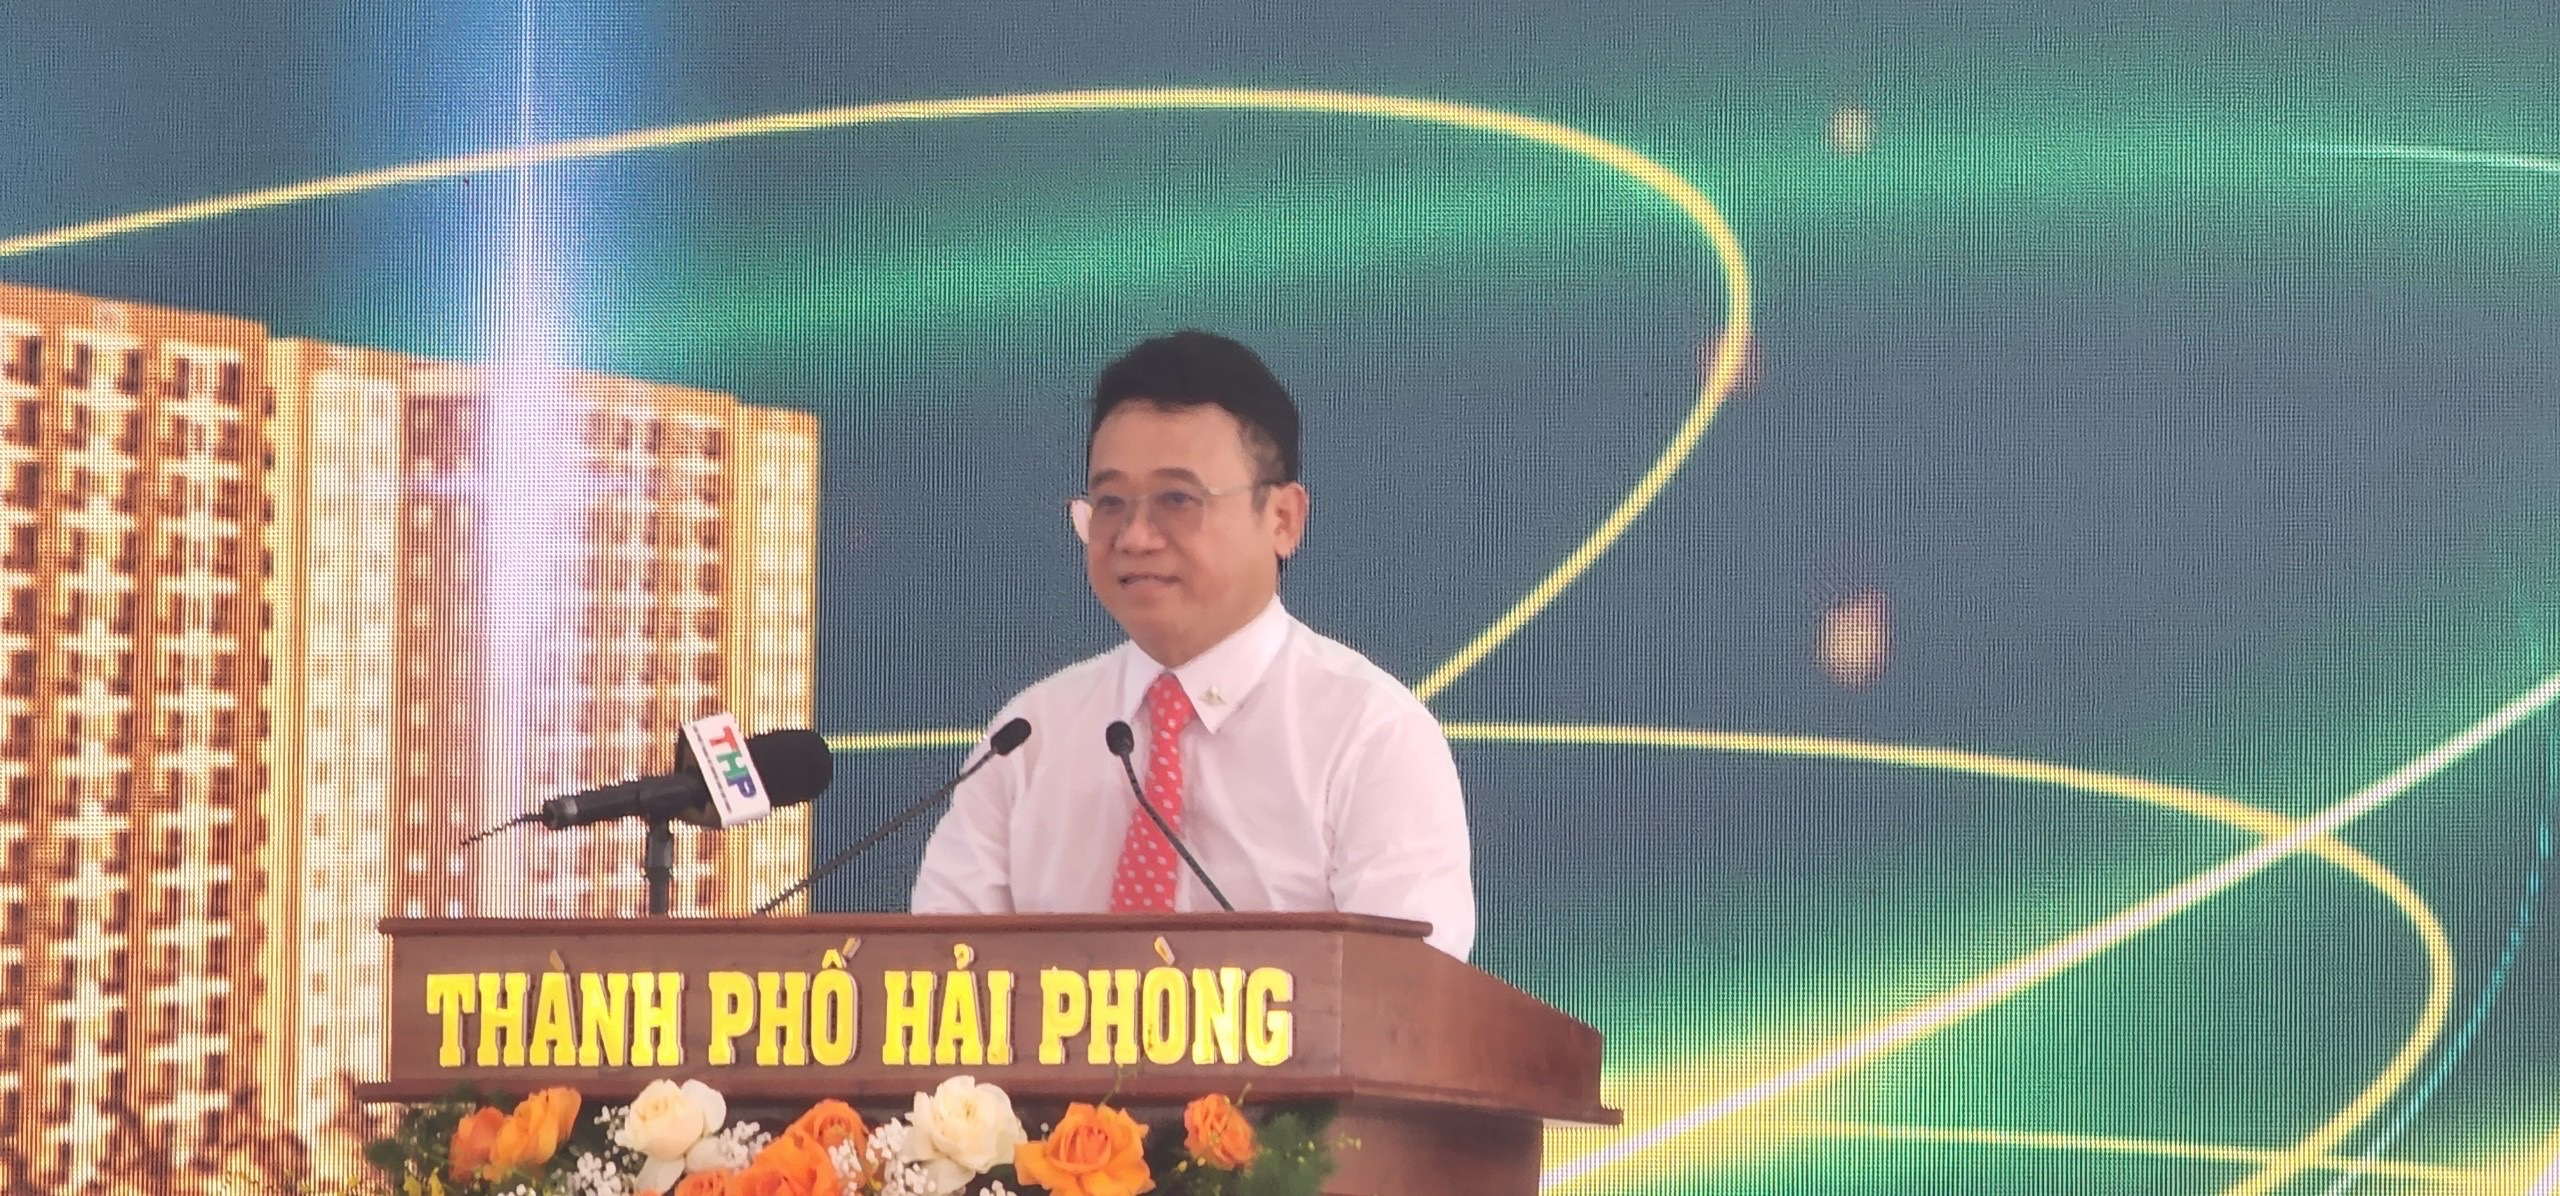 Ông Đặng Thành Tâm – Chủ tịch HĐQT kiêm Tổng Giám đốc Công ty cổ phần Khu công nghiệp Sài Gòn – Hải Phòng phát biểu tại buổi lễ.